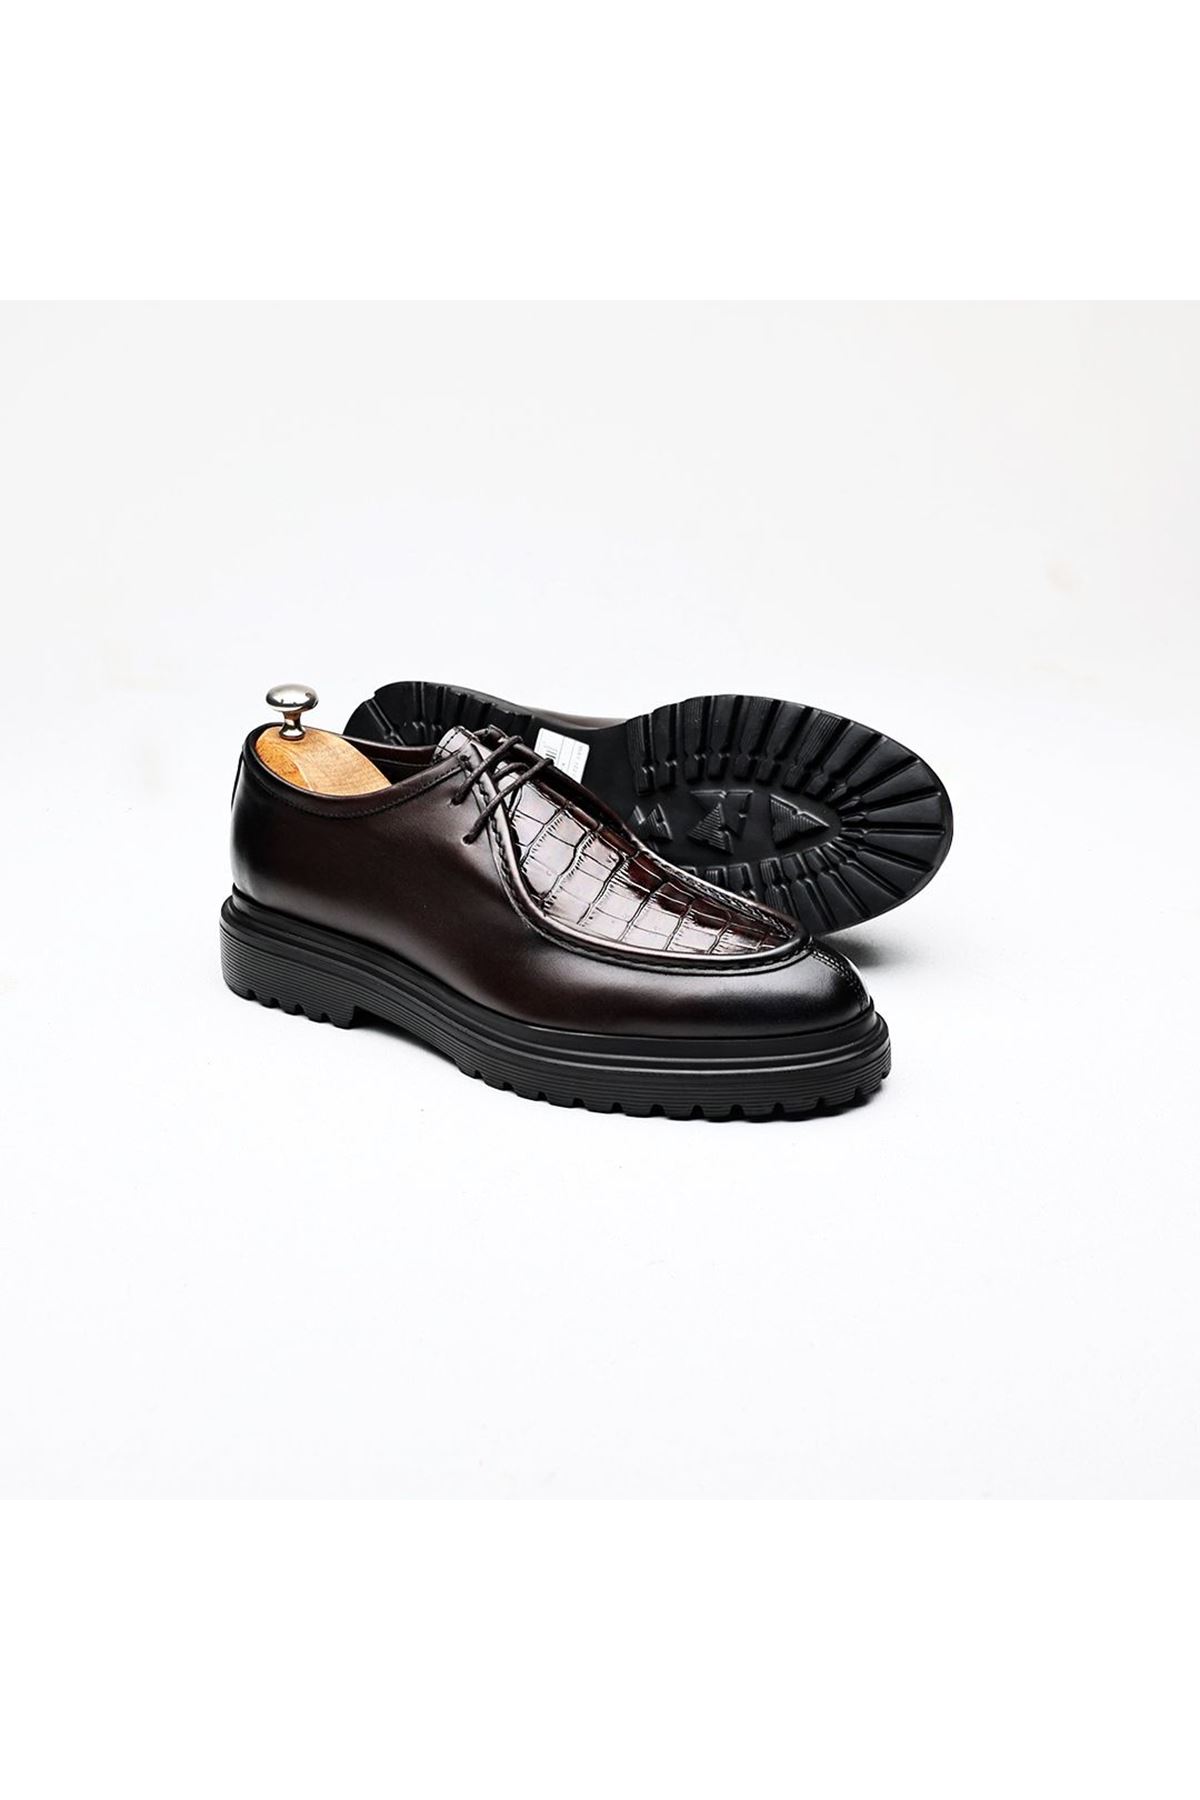 Boy Uzatan Ayakkabı Gizli Topuklu Hakiki Deri Kahve Godiva Erkek Klasik Ayakkabı MYY230